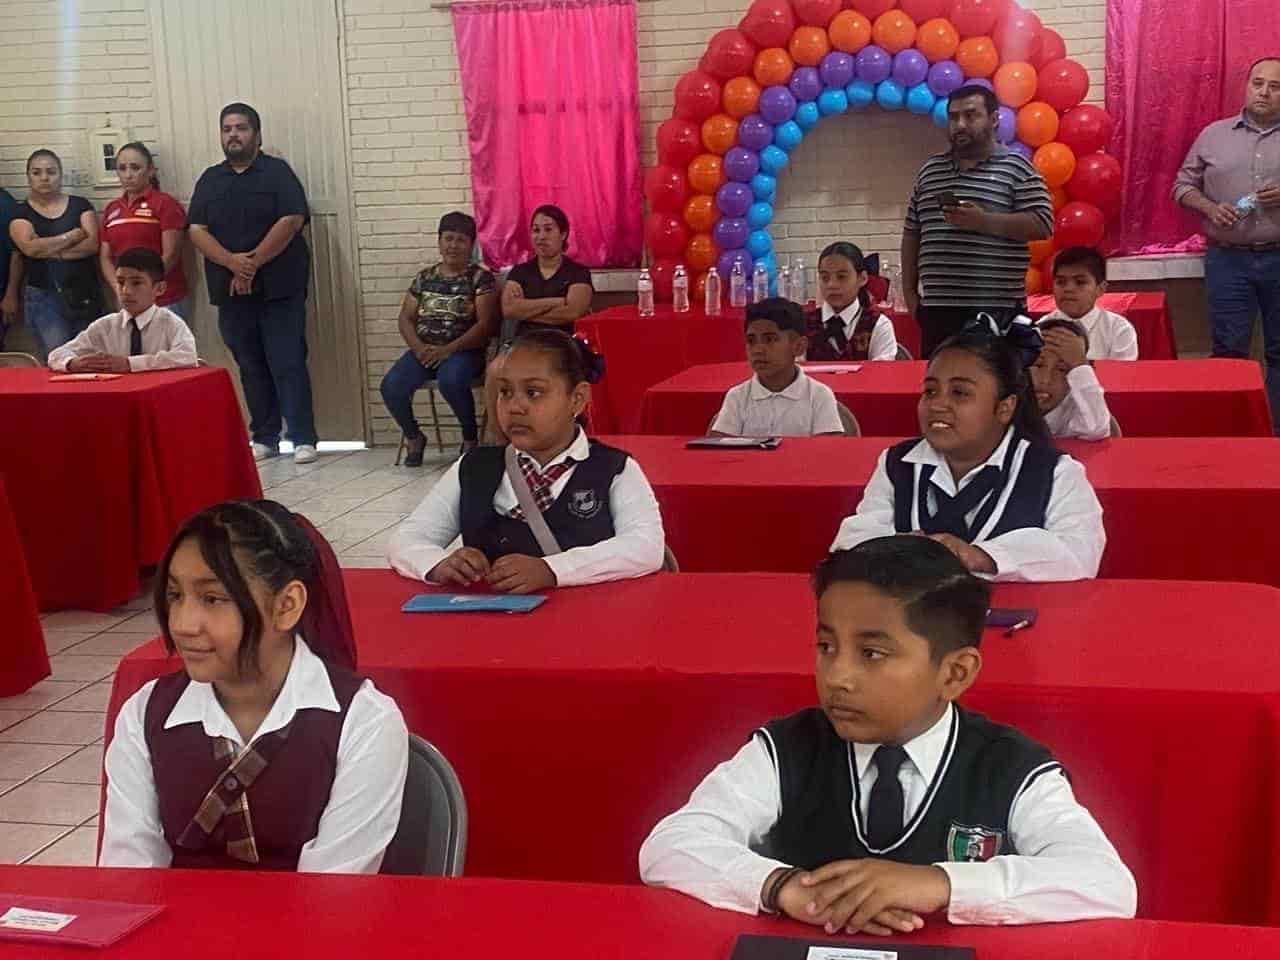 Éxito Total en la Selección del Cabildo Infantil de Allende 2024